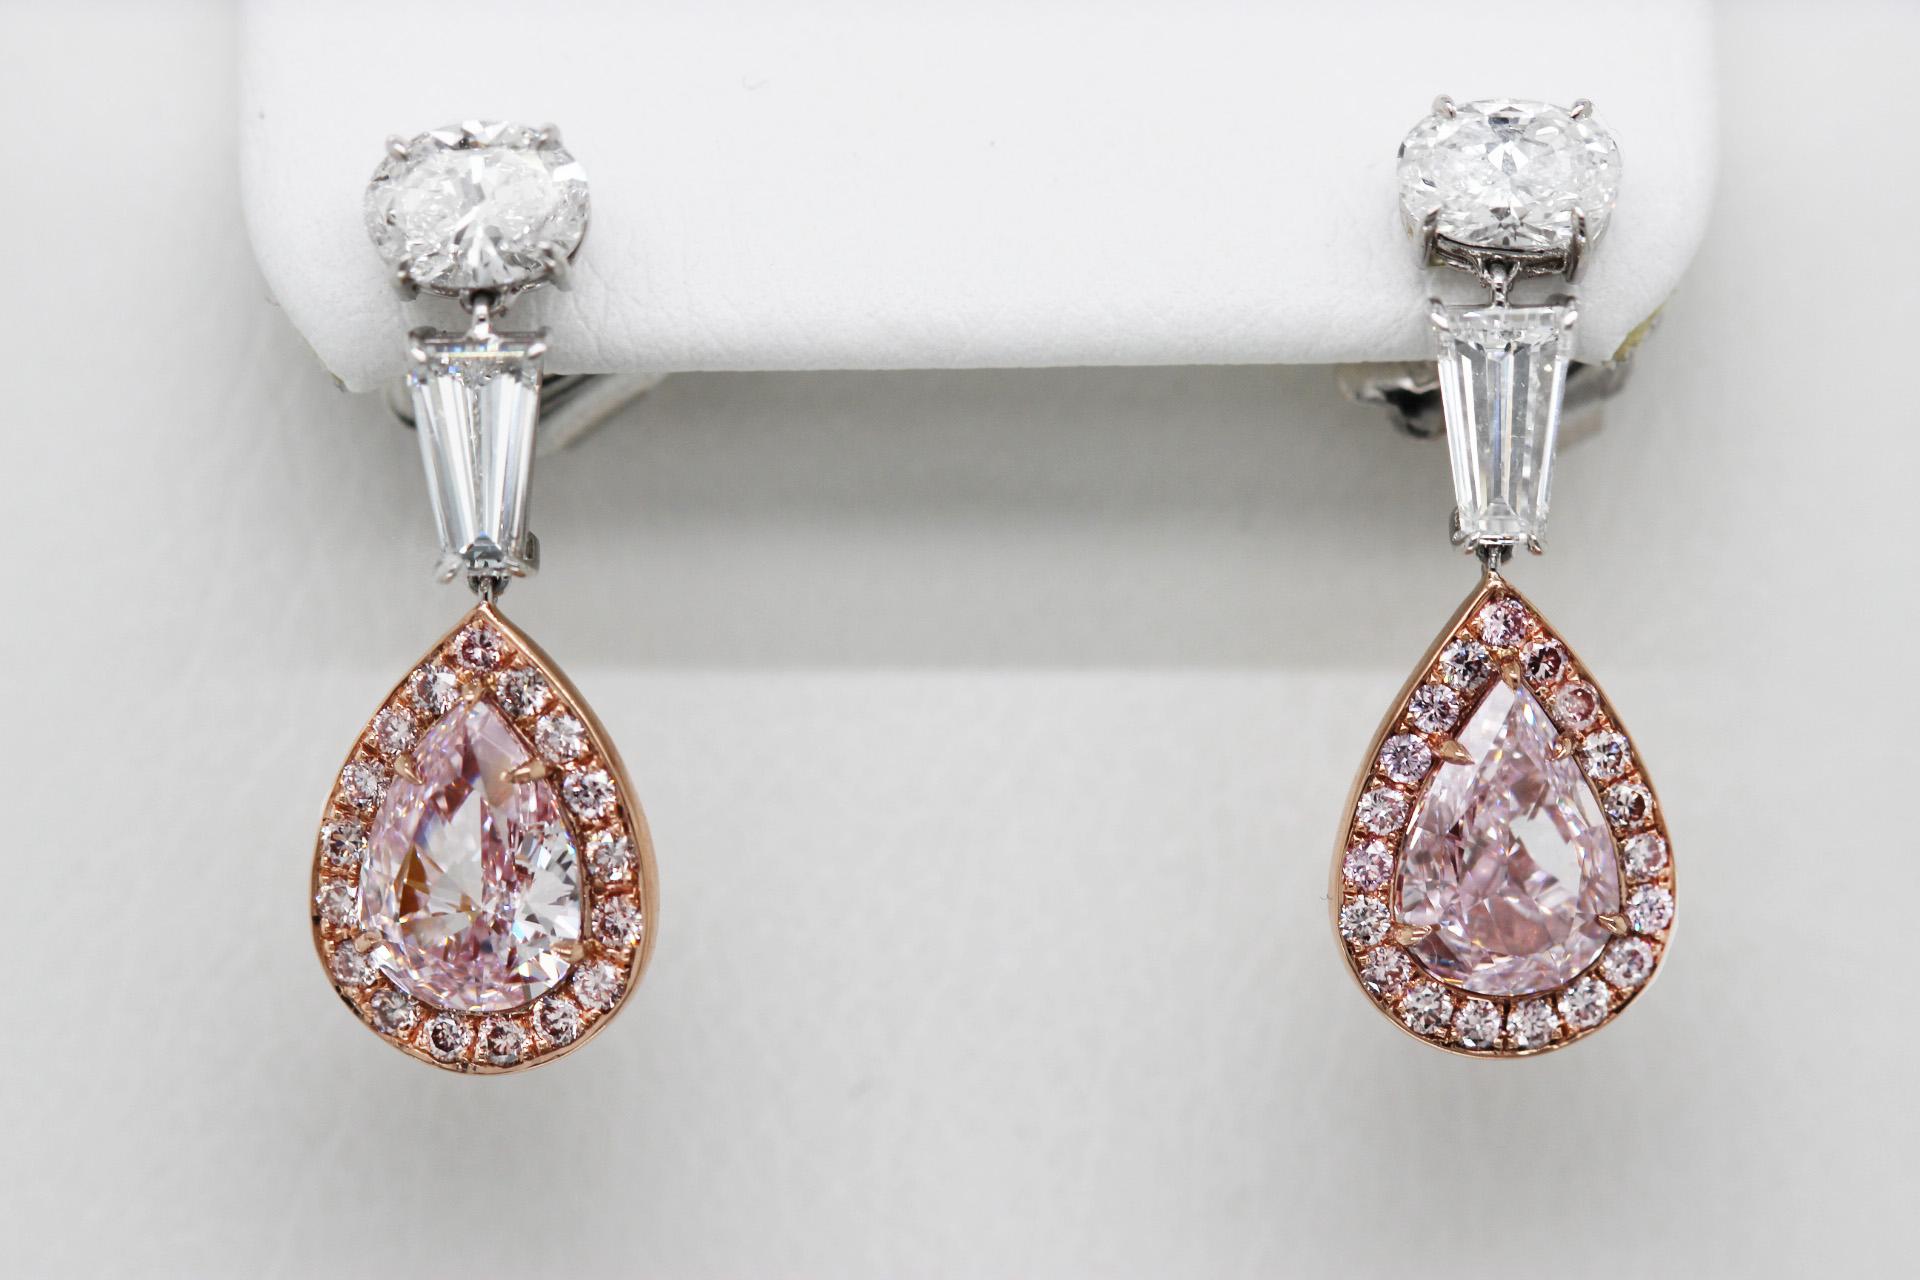 Une paire de boucles d'oreilles pendantes en diamant rose naturel de SCARSELLI, d'un poids total de 5,48 carats. Sertie sur de l'or rose 18k et du platine, la paire présente deux pierres centrales exceptionnelles en diamant rose fantaisie certifié